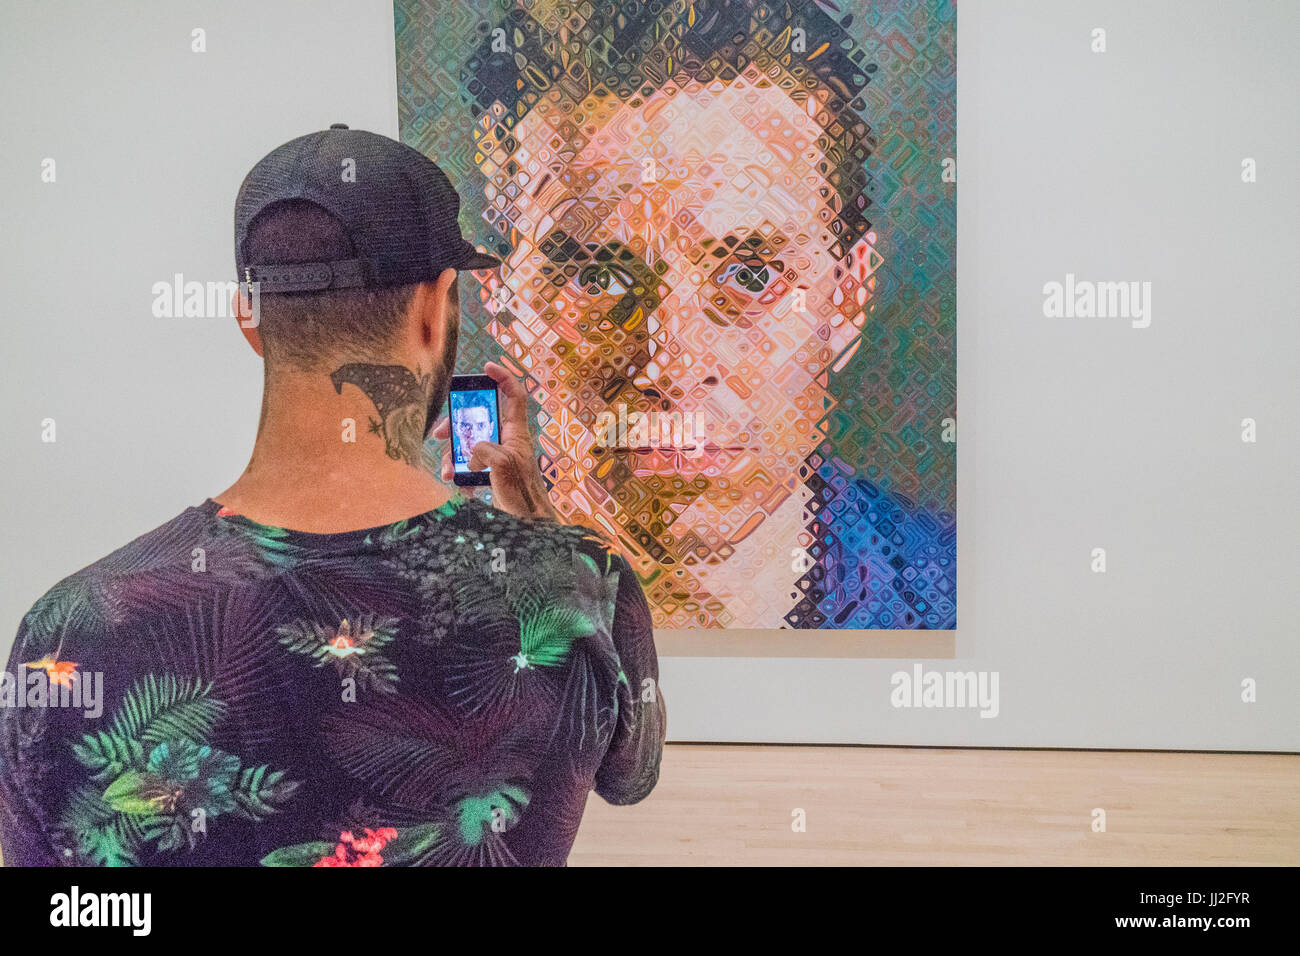 Un jeune mâle adulte, avec un tatouage de cou, utilise son téléphone cellulaire pour photographier une grande peinture de l'artiste Chuck Close dans un musée d'art. L'image d'e Banque D'Images